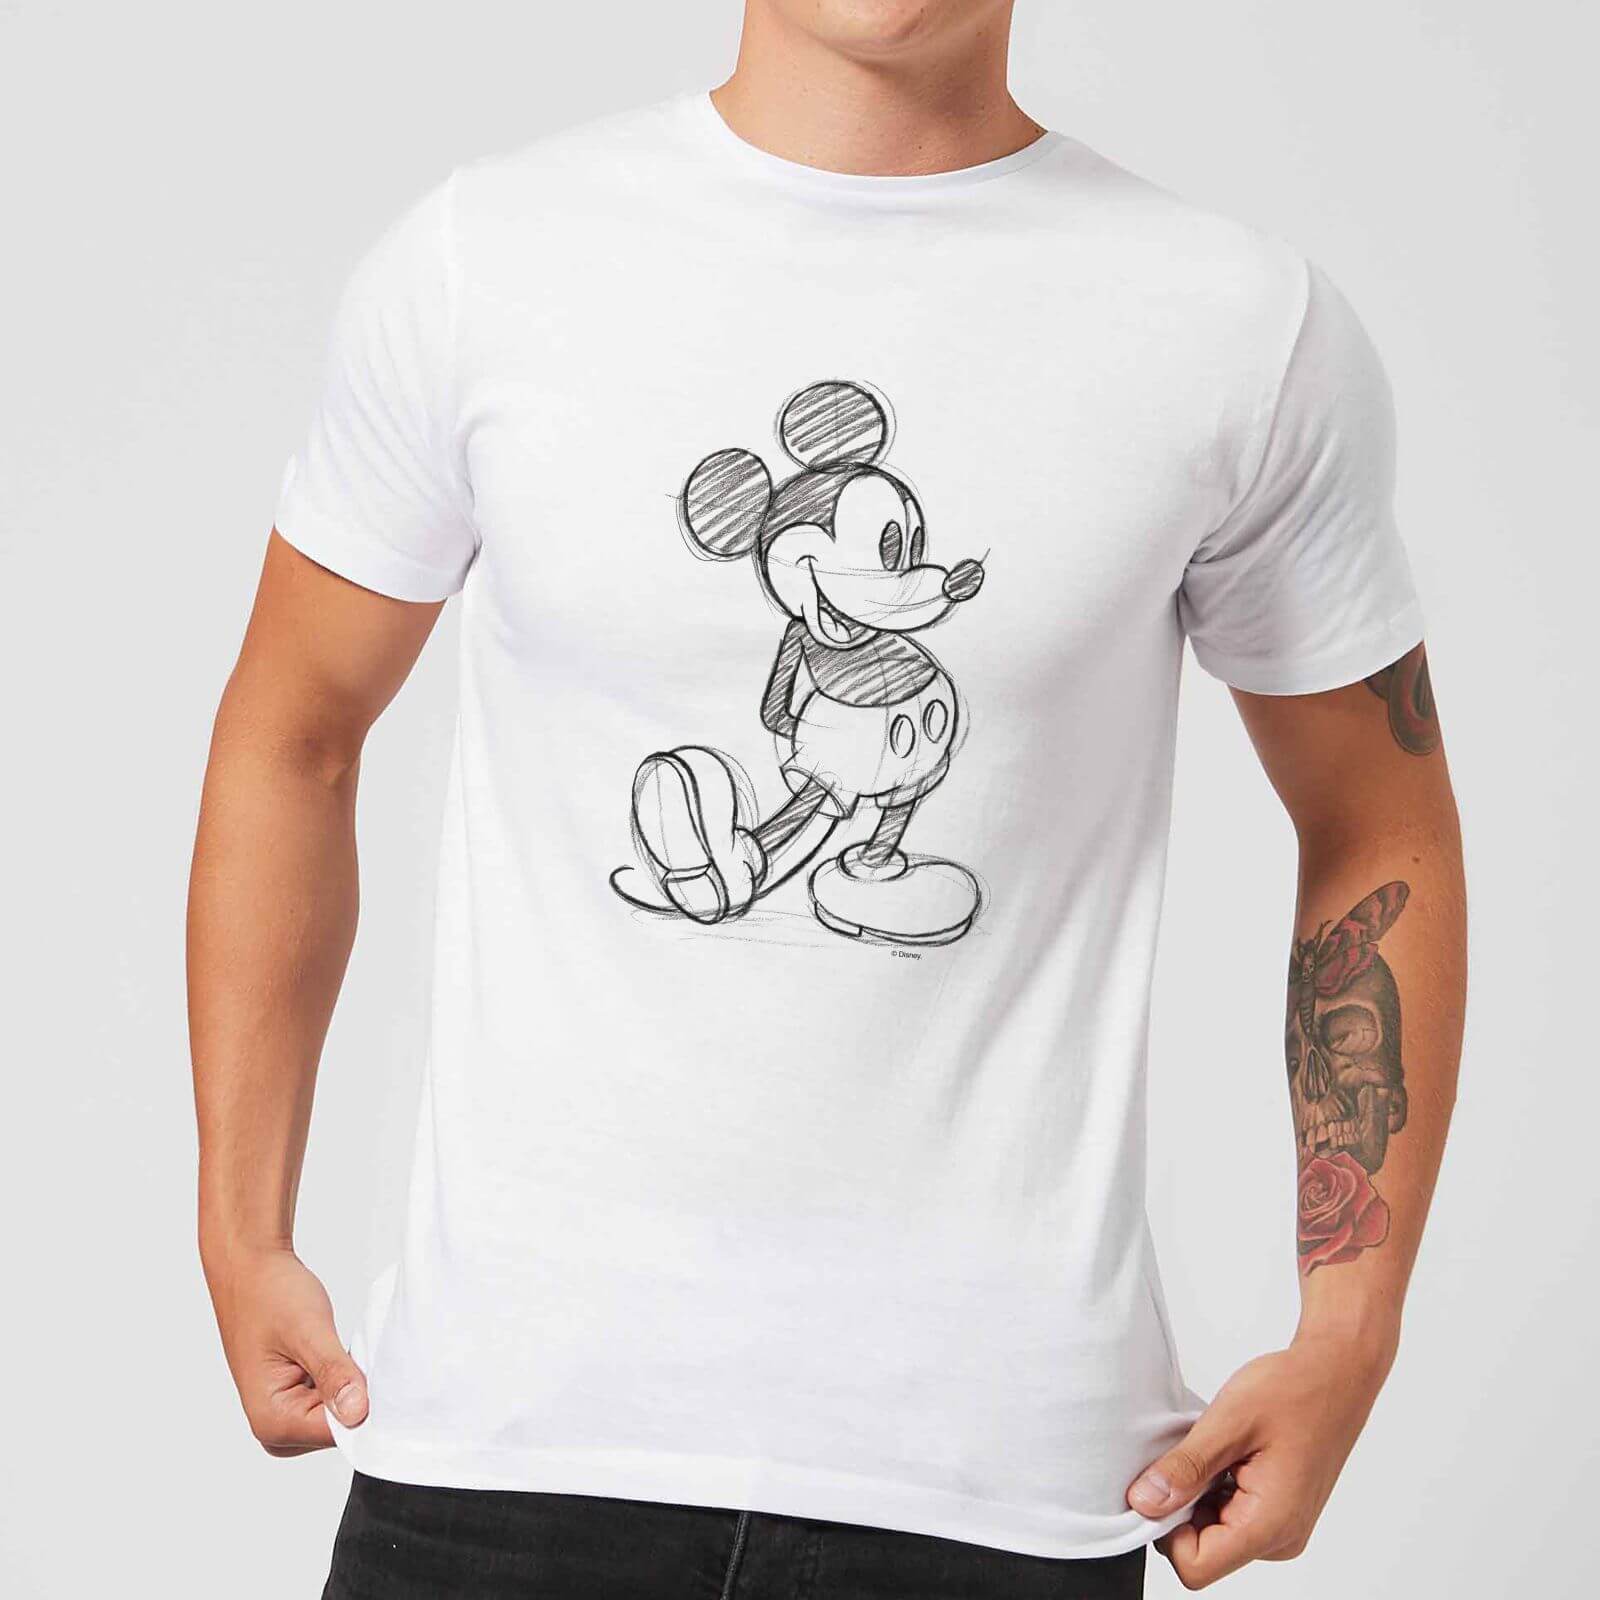 Disney Mickey Mouse Sketch Men's T-Shirt - White - L